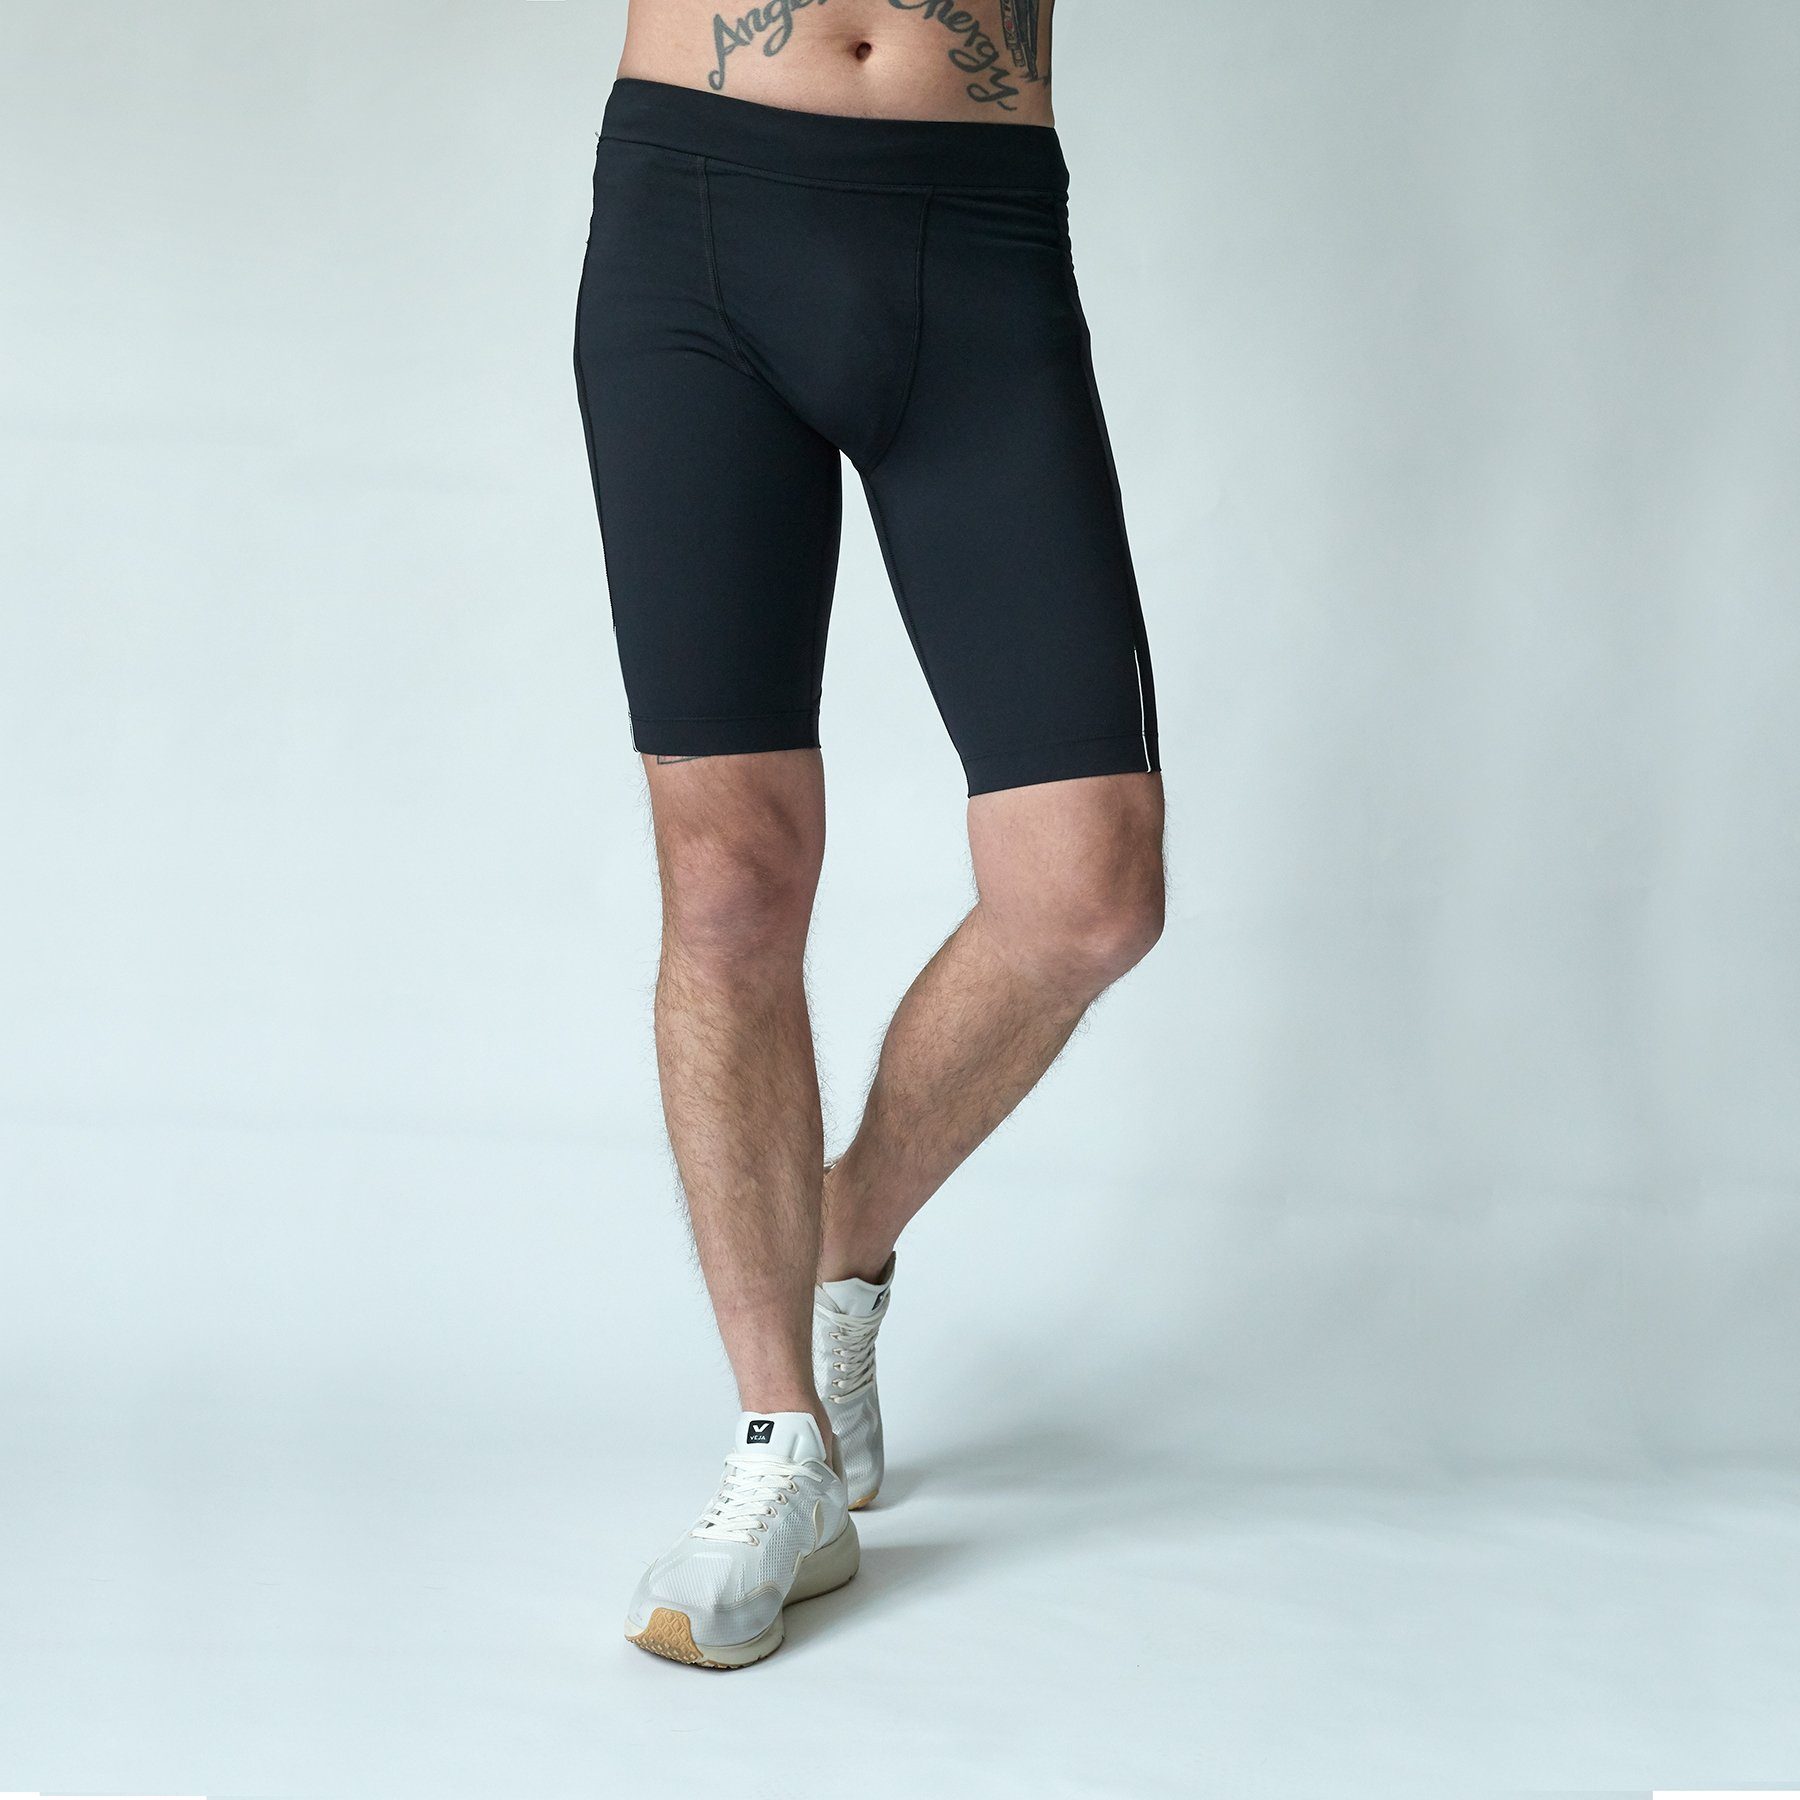 / Tights schwarz mit Leggings Taschen - Kurze Running Lauftights Sport Herren runamics